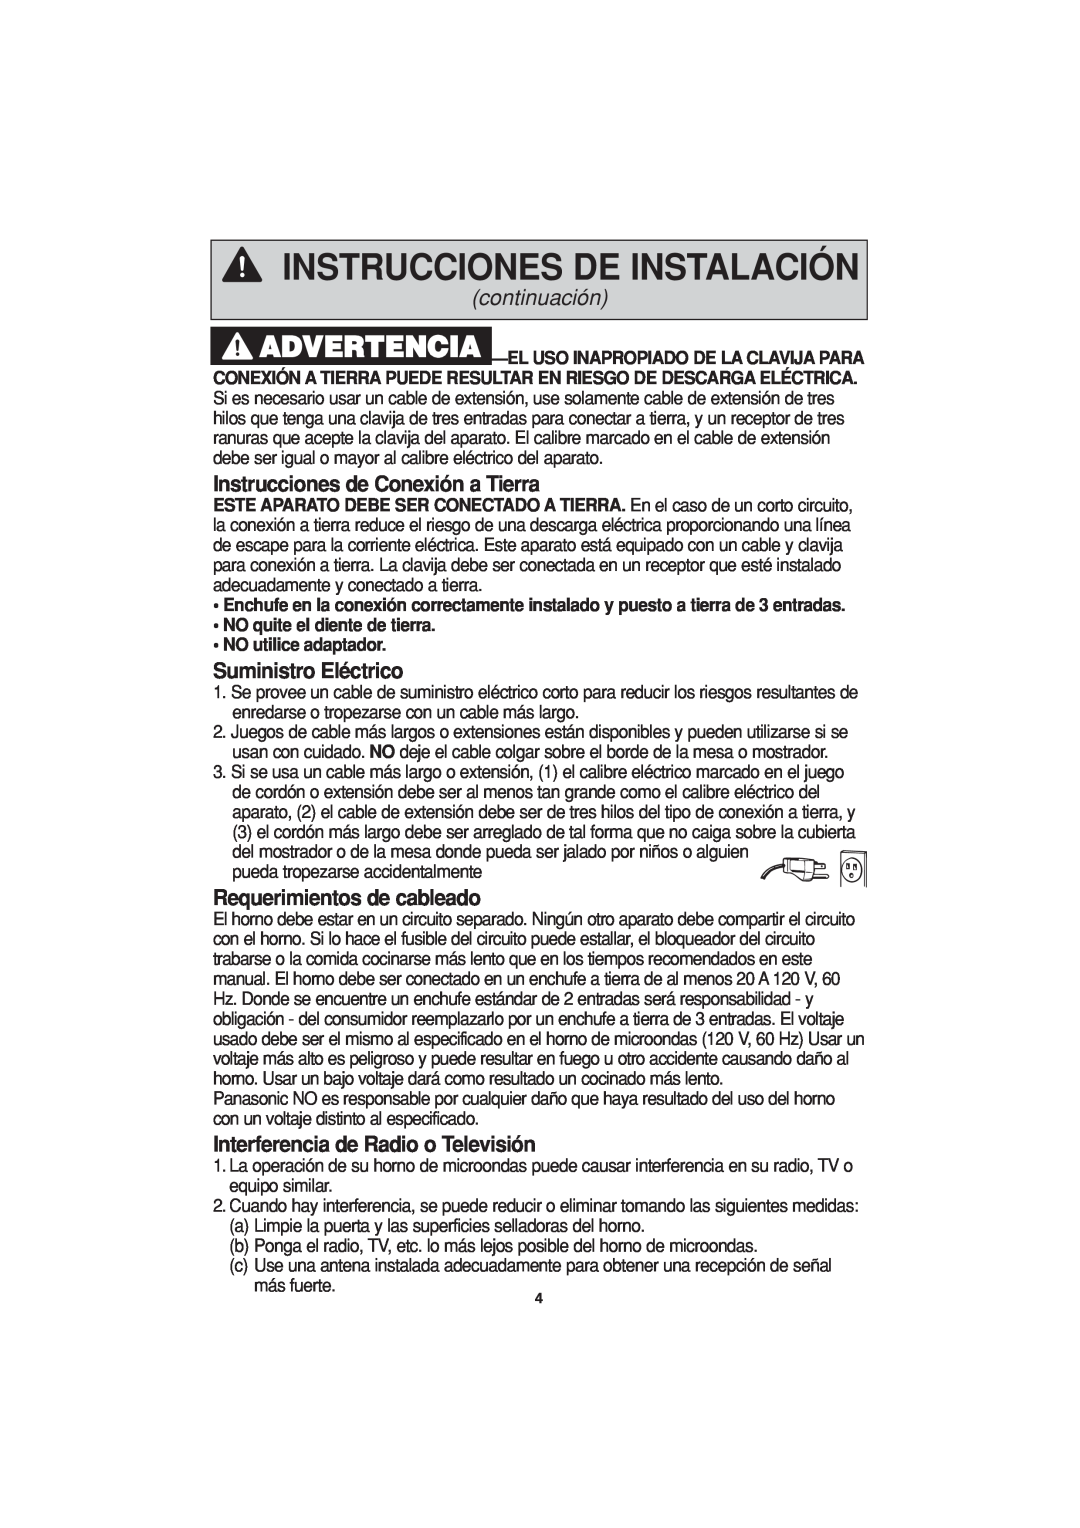 Panasonic NN-H644 Instrucciones de Conexión a Tierra, Suministro Eléctrico, Requerimientos de cableado, continuación 